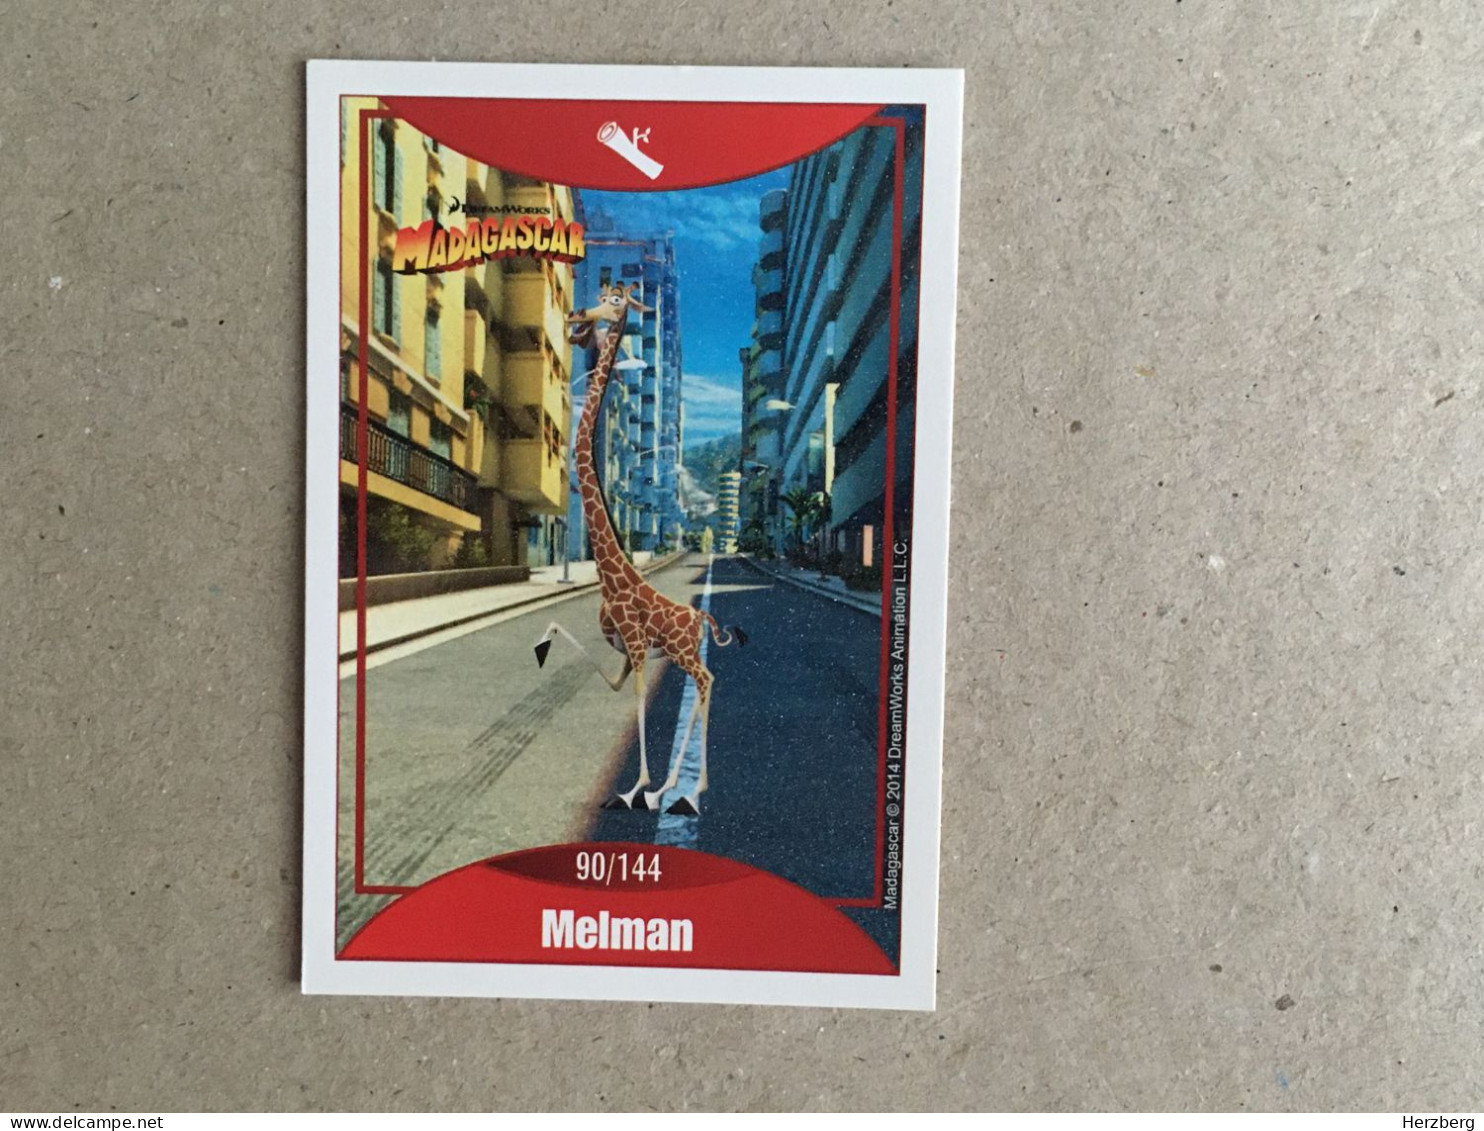 Italia - Madagascar - Le Grandi Avventure - Panorama Italy Edition - Dreamworks Pictures 2014 - Collection Trading Card - Altri & Non Classificati